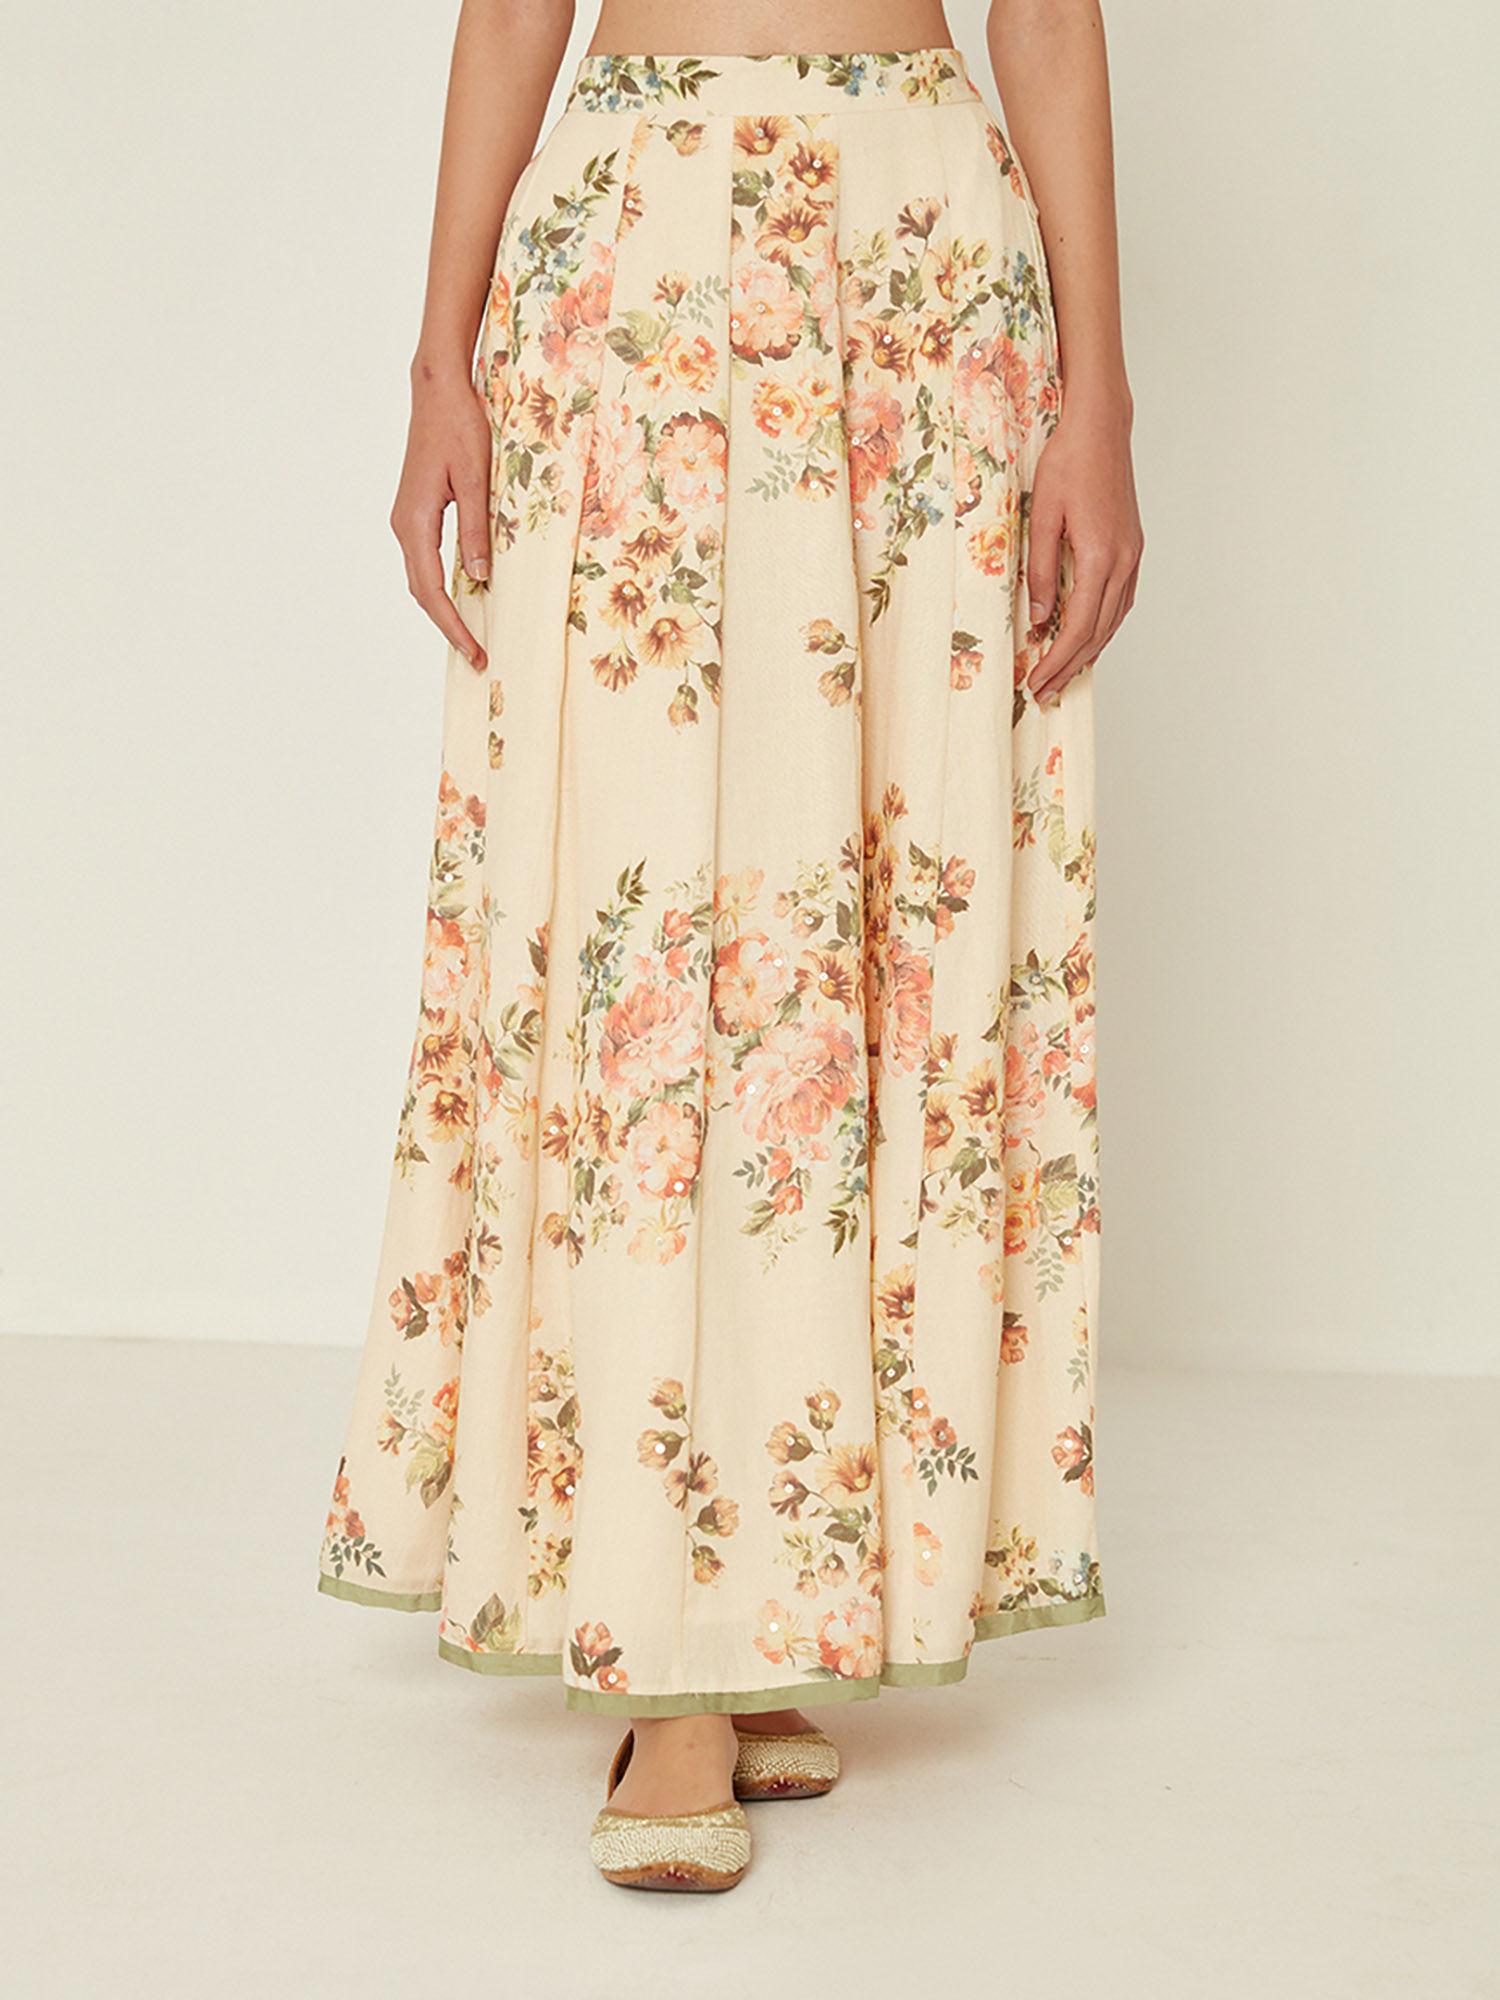 beige floral printed skirt